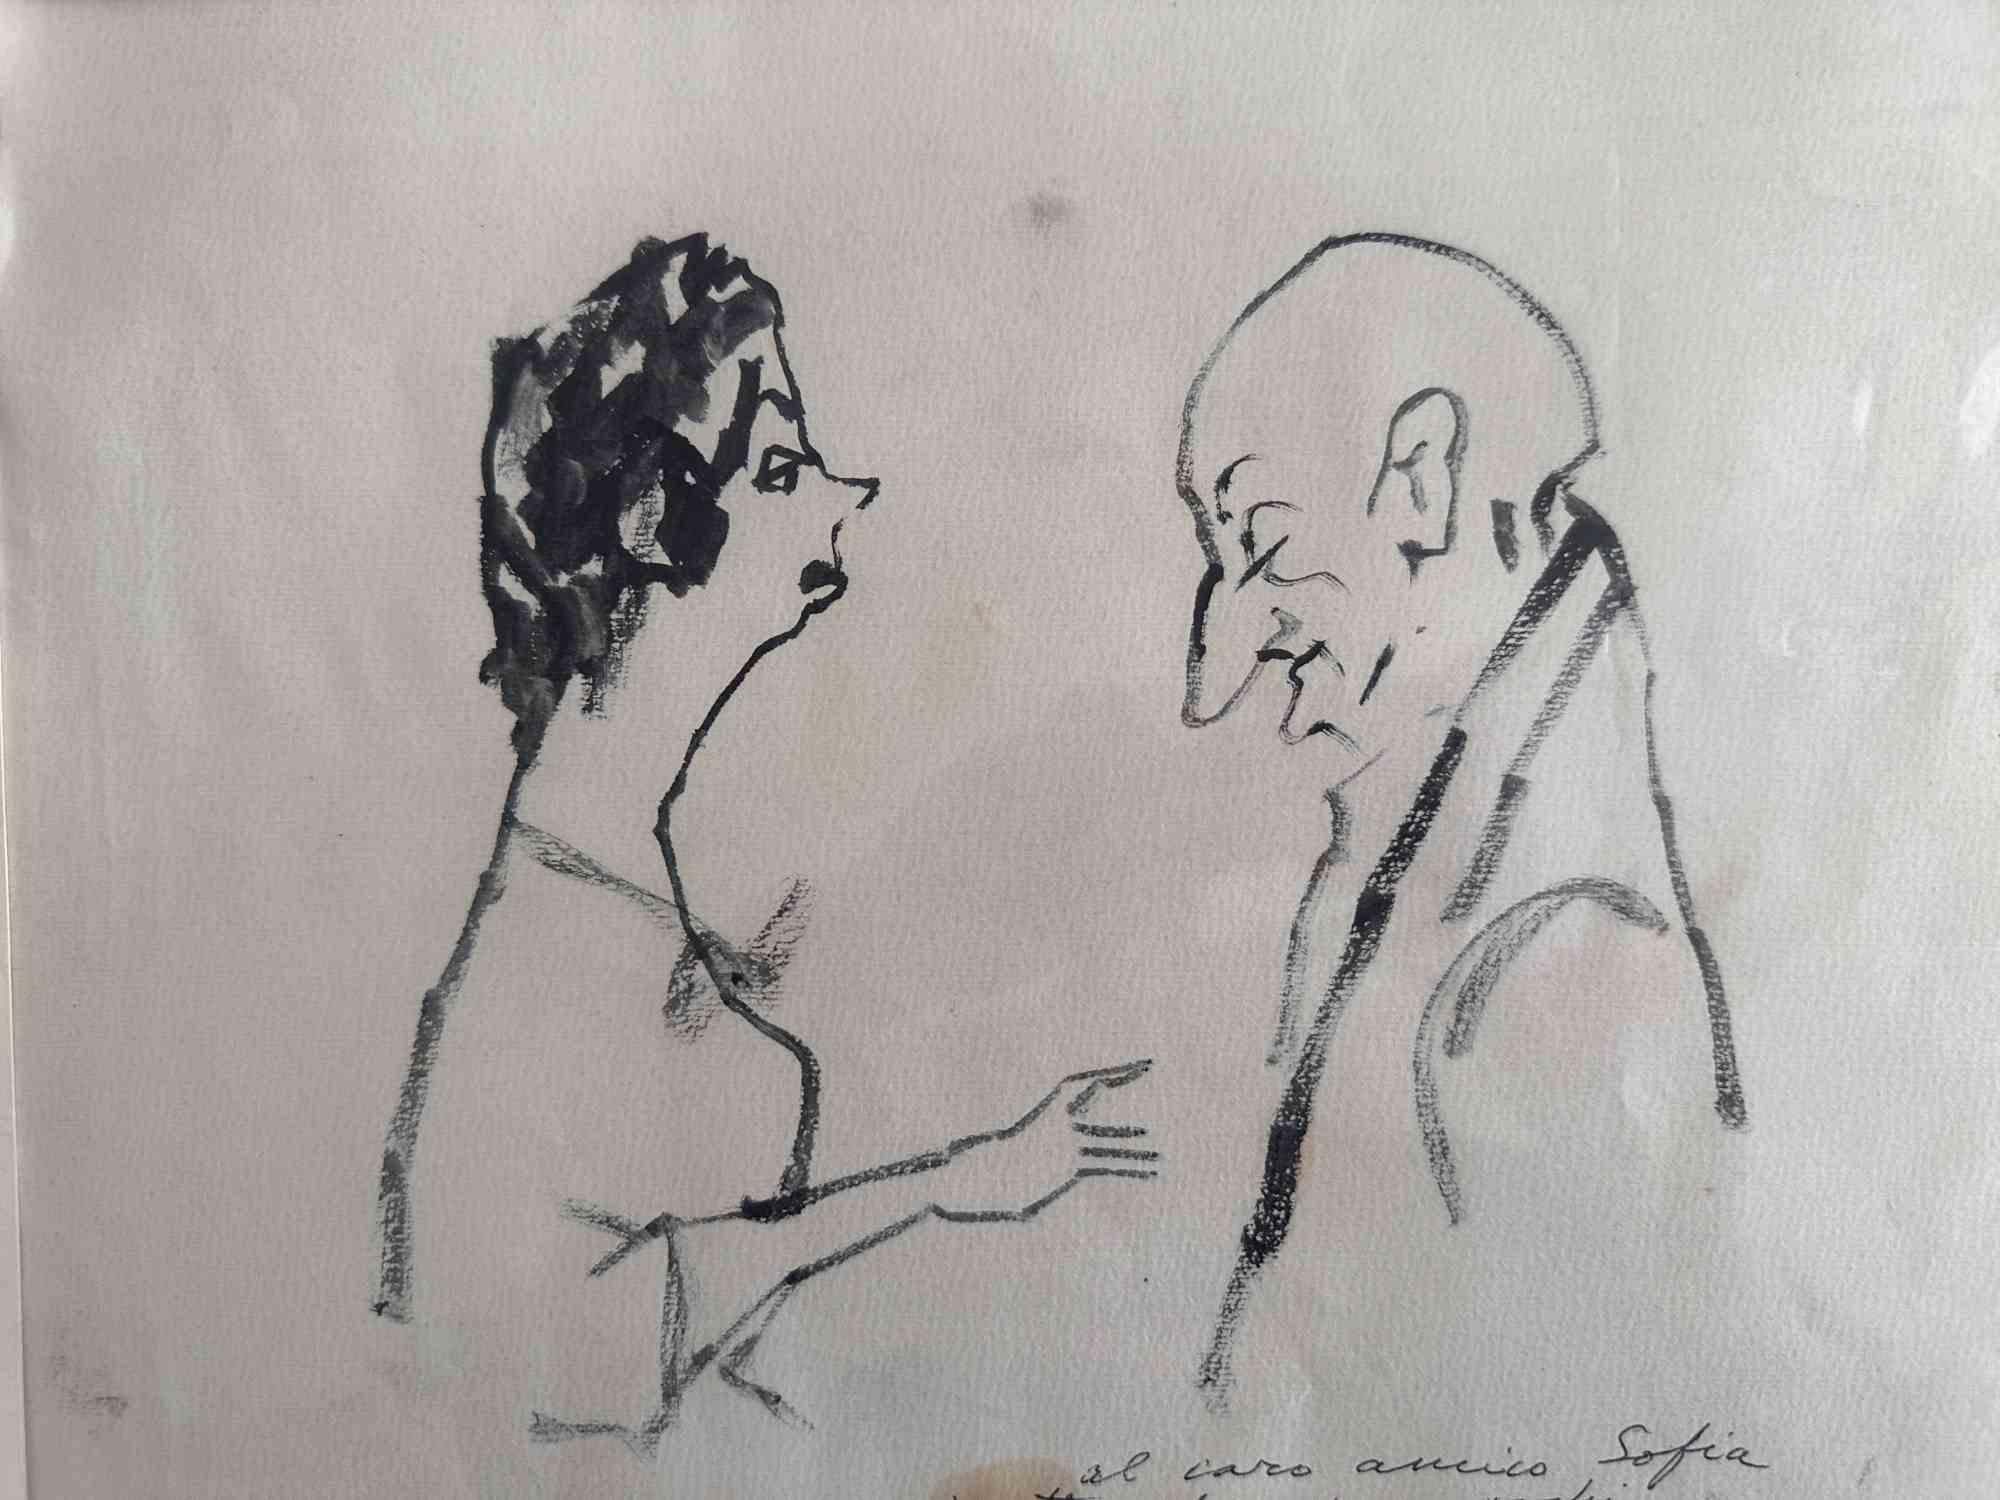 Figurative Art Mino Maccari  - Conversation brute - dessin de Mino Maccari, 1960 environ